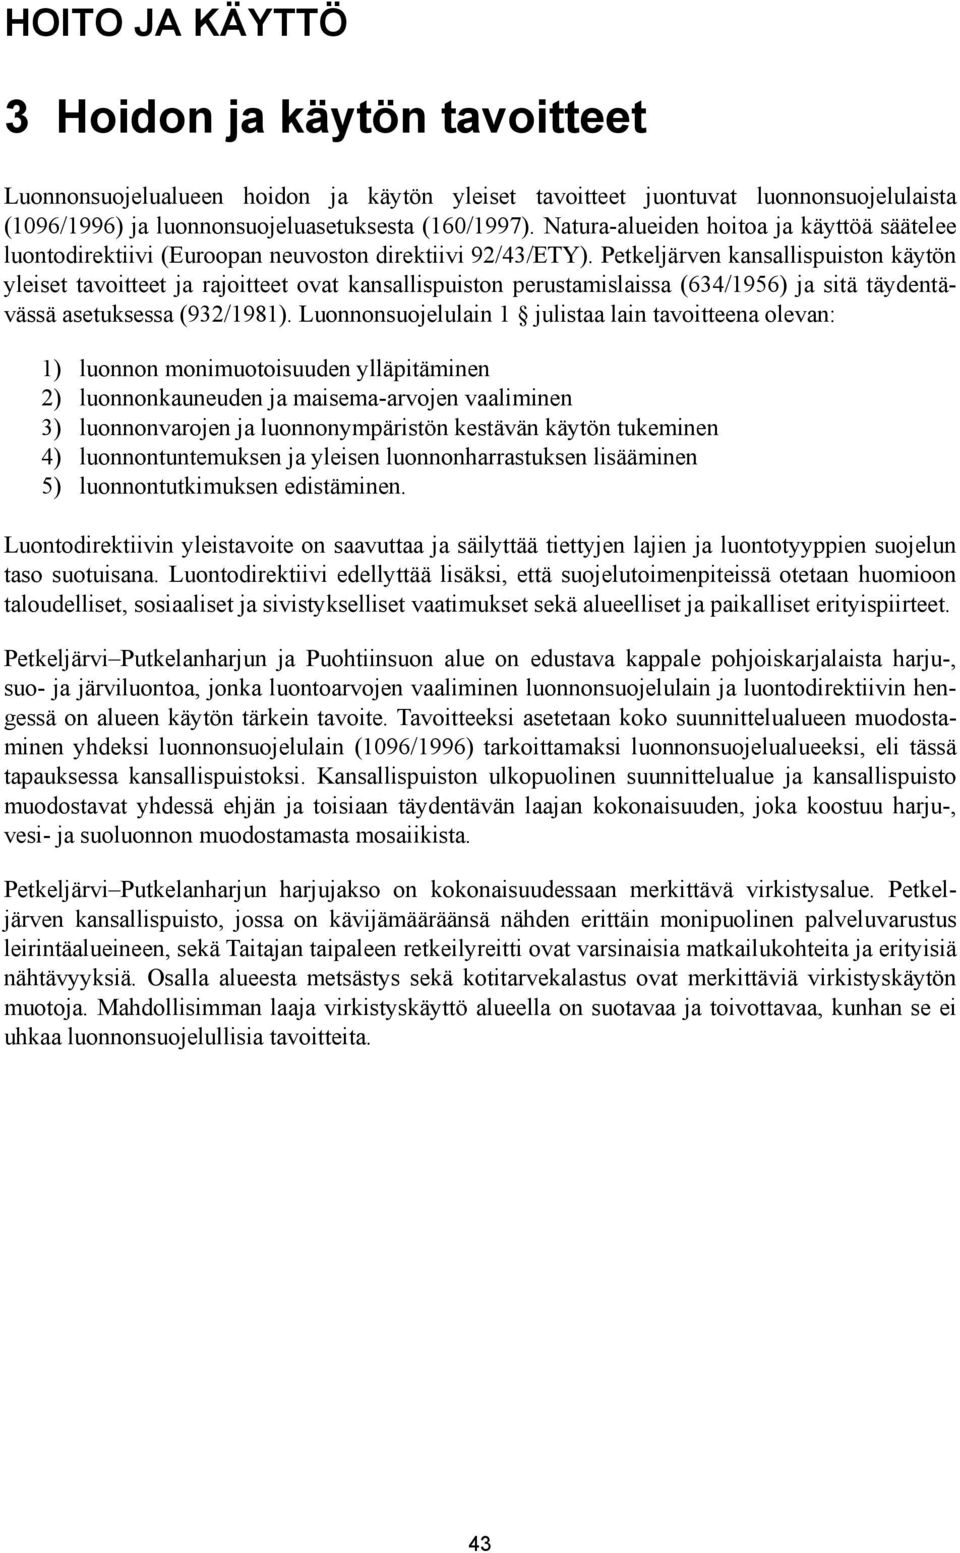 Petkeljärven kansallispuiston käytön yleiset tavoitteet ja rajoitteet ovat kansallispuiston perustamislaissa (634/1956) ja sitä täydentävässä asetuksessa (932/1981).